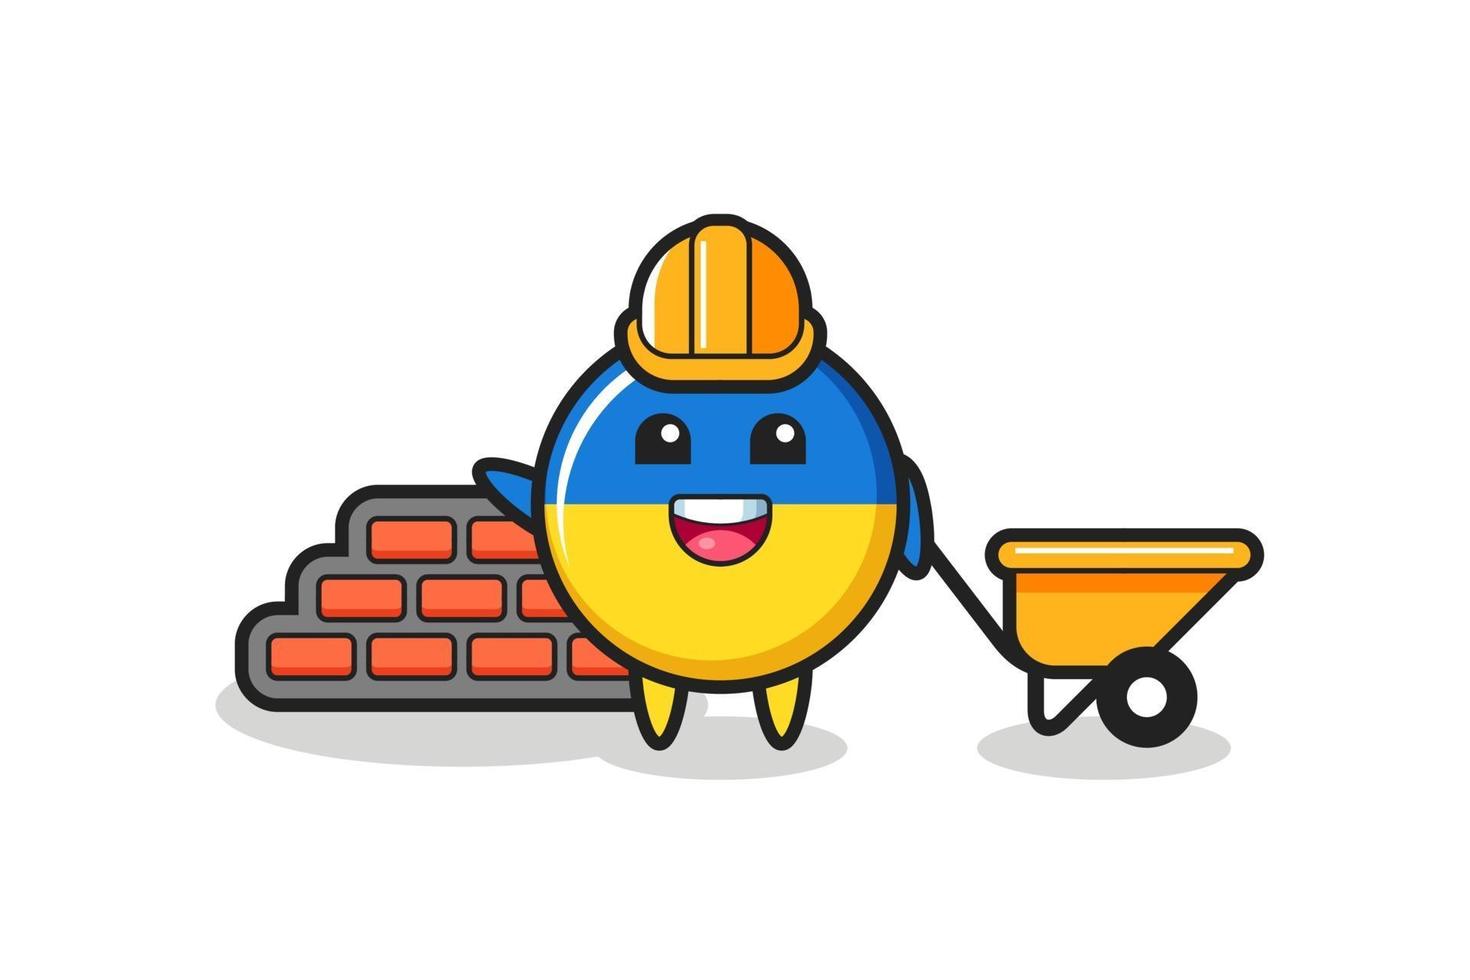 Zeichentrickfigur des ukrainischen Flaggenabzeichens als Baumeister vektor